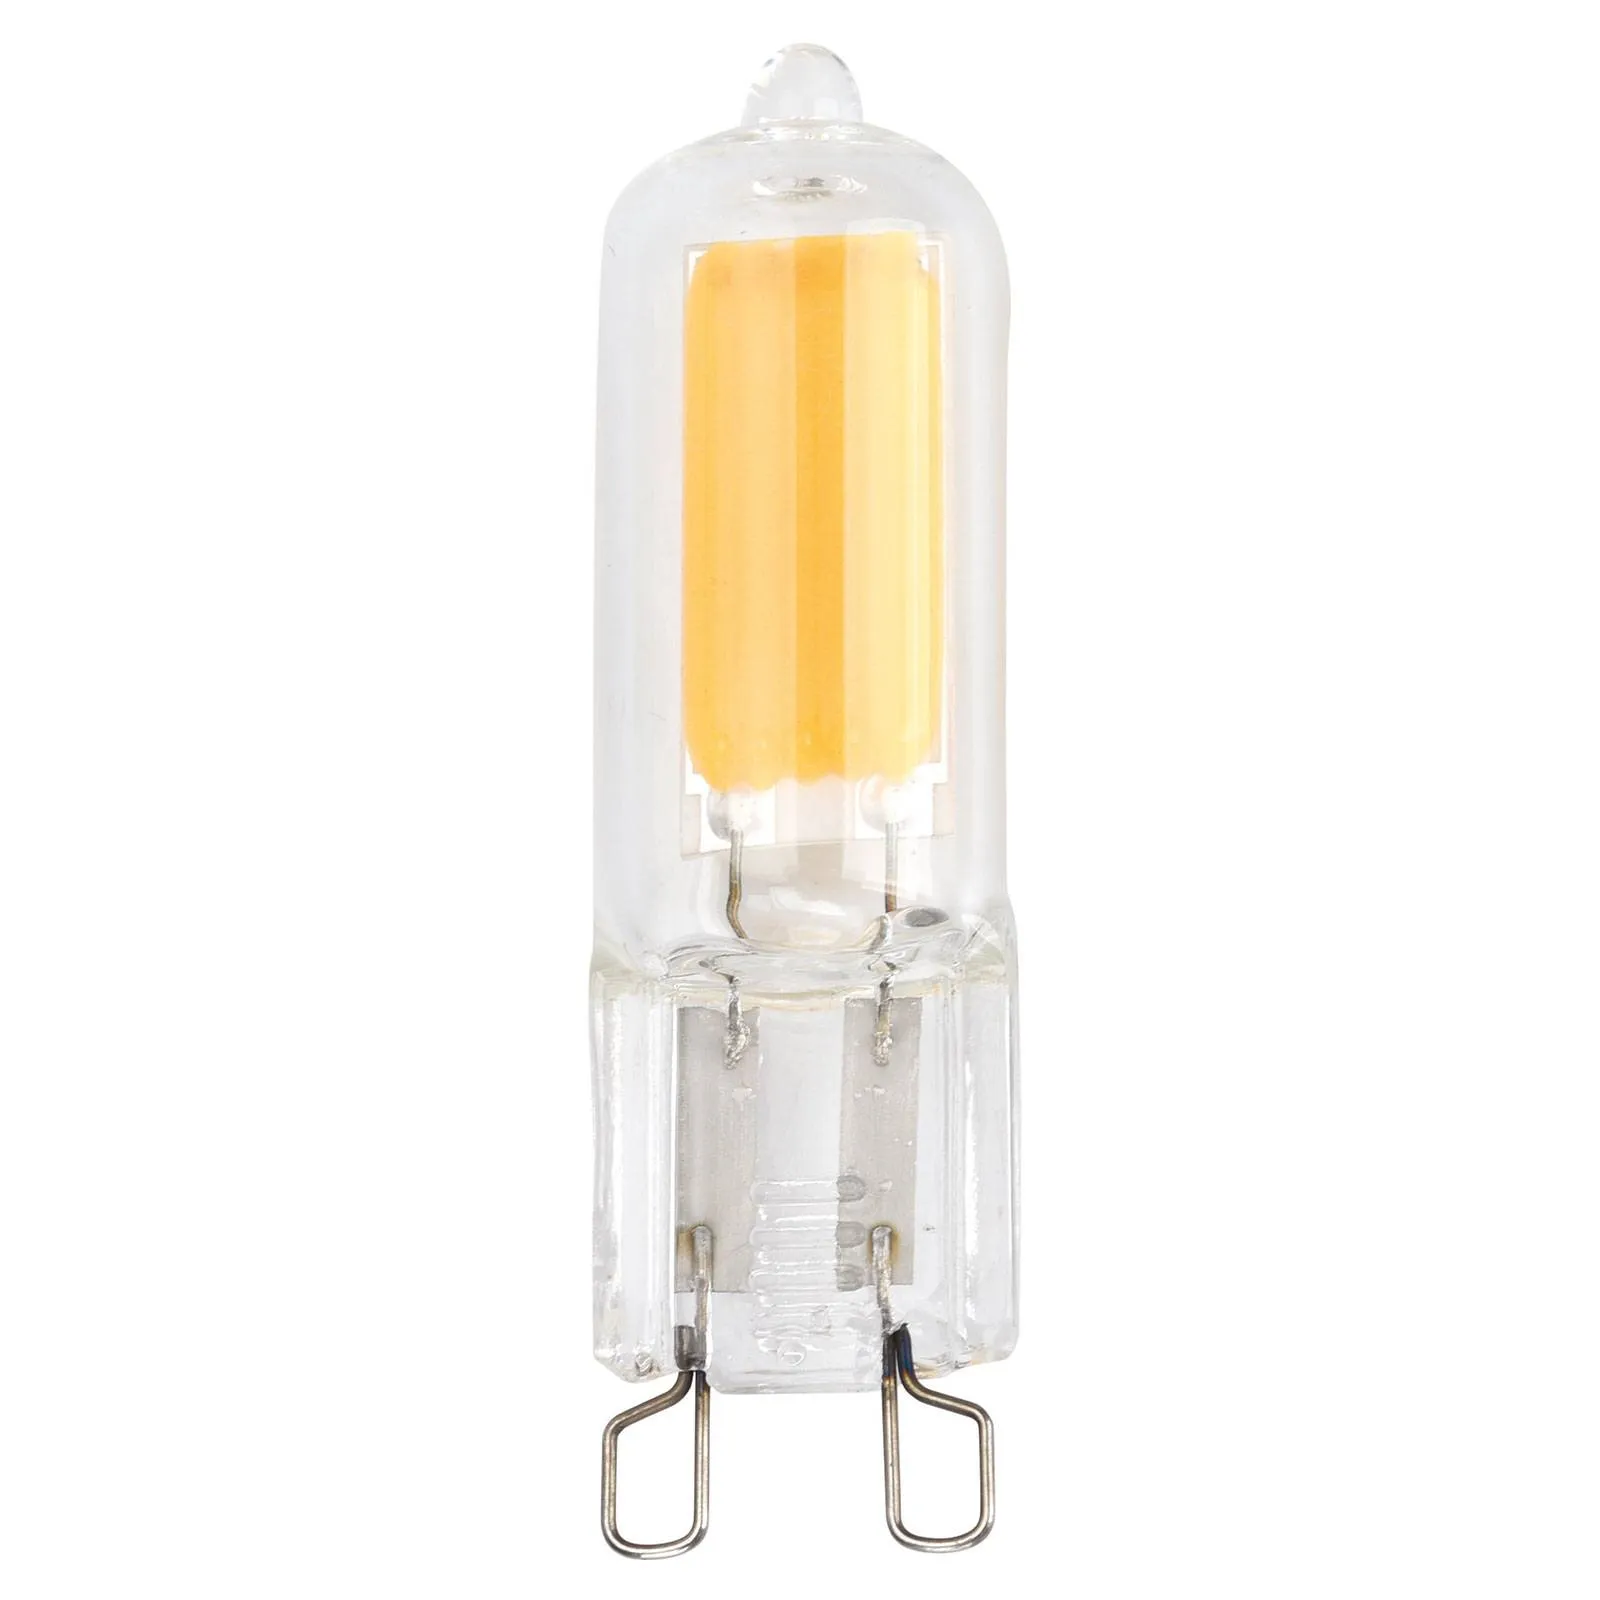 Bi-pin LED bulb ToLEDo RT G9 2 W 827 clear